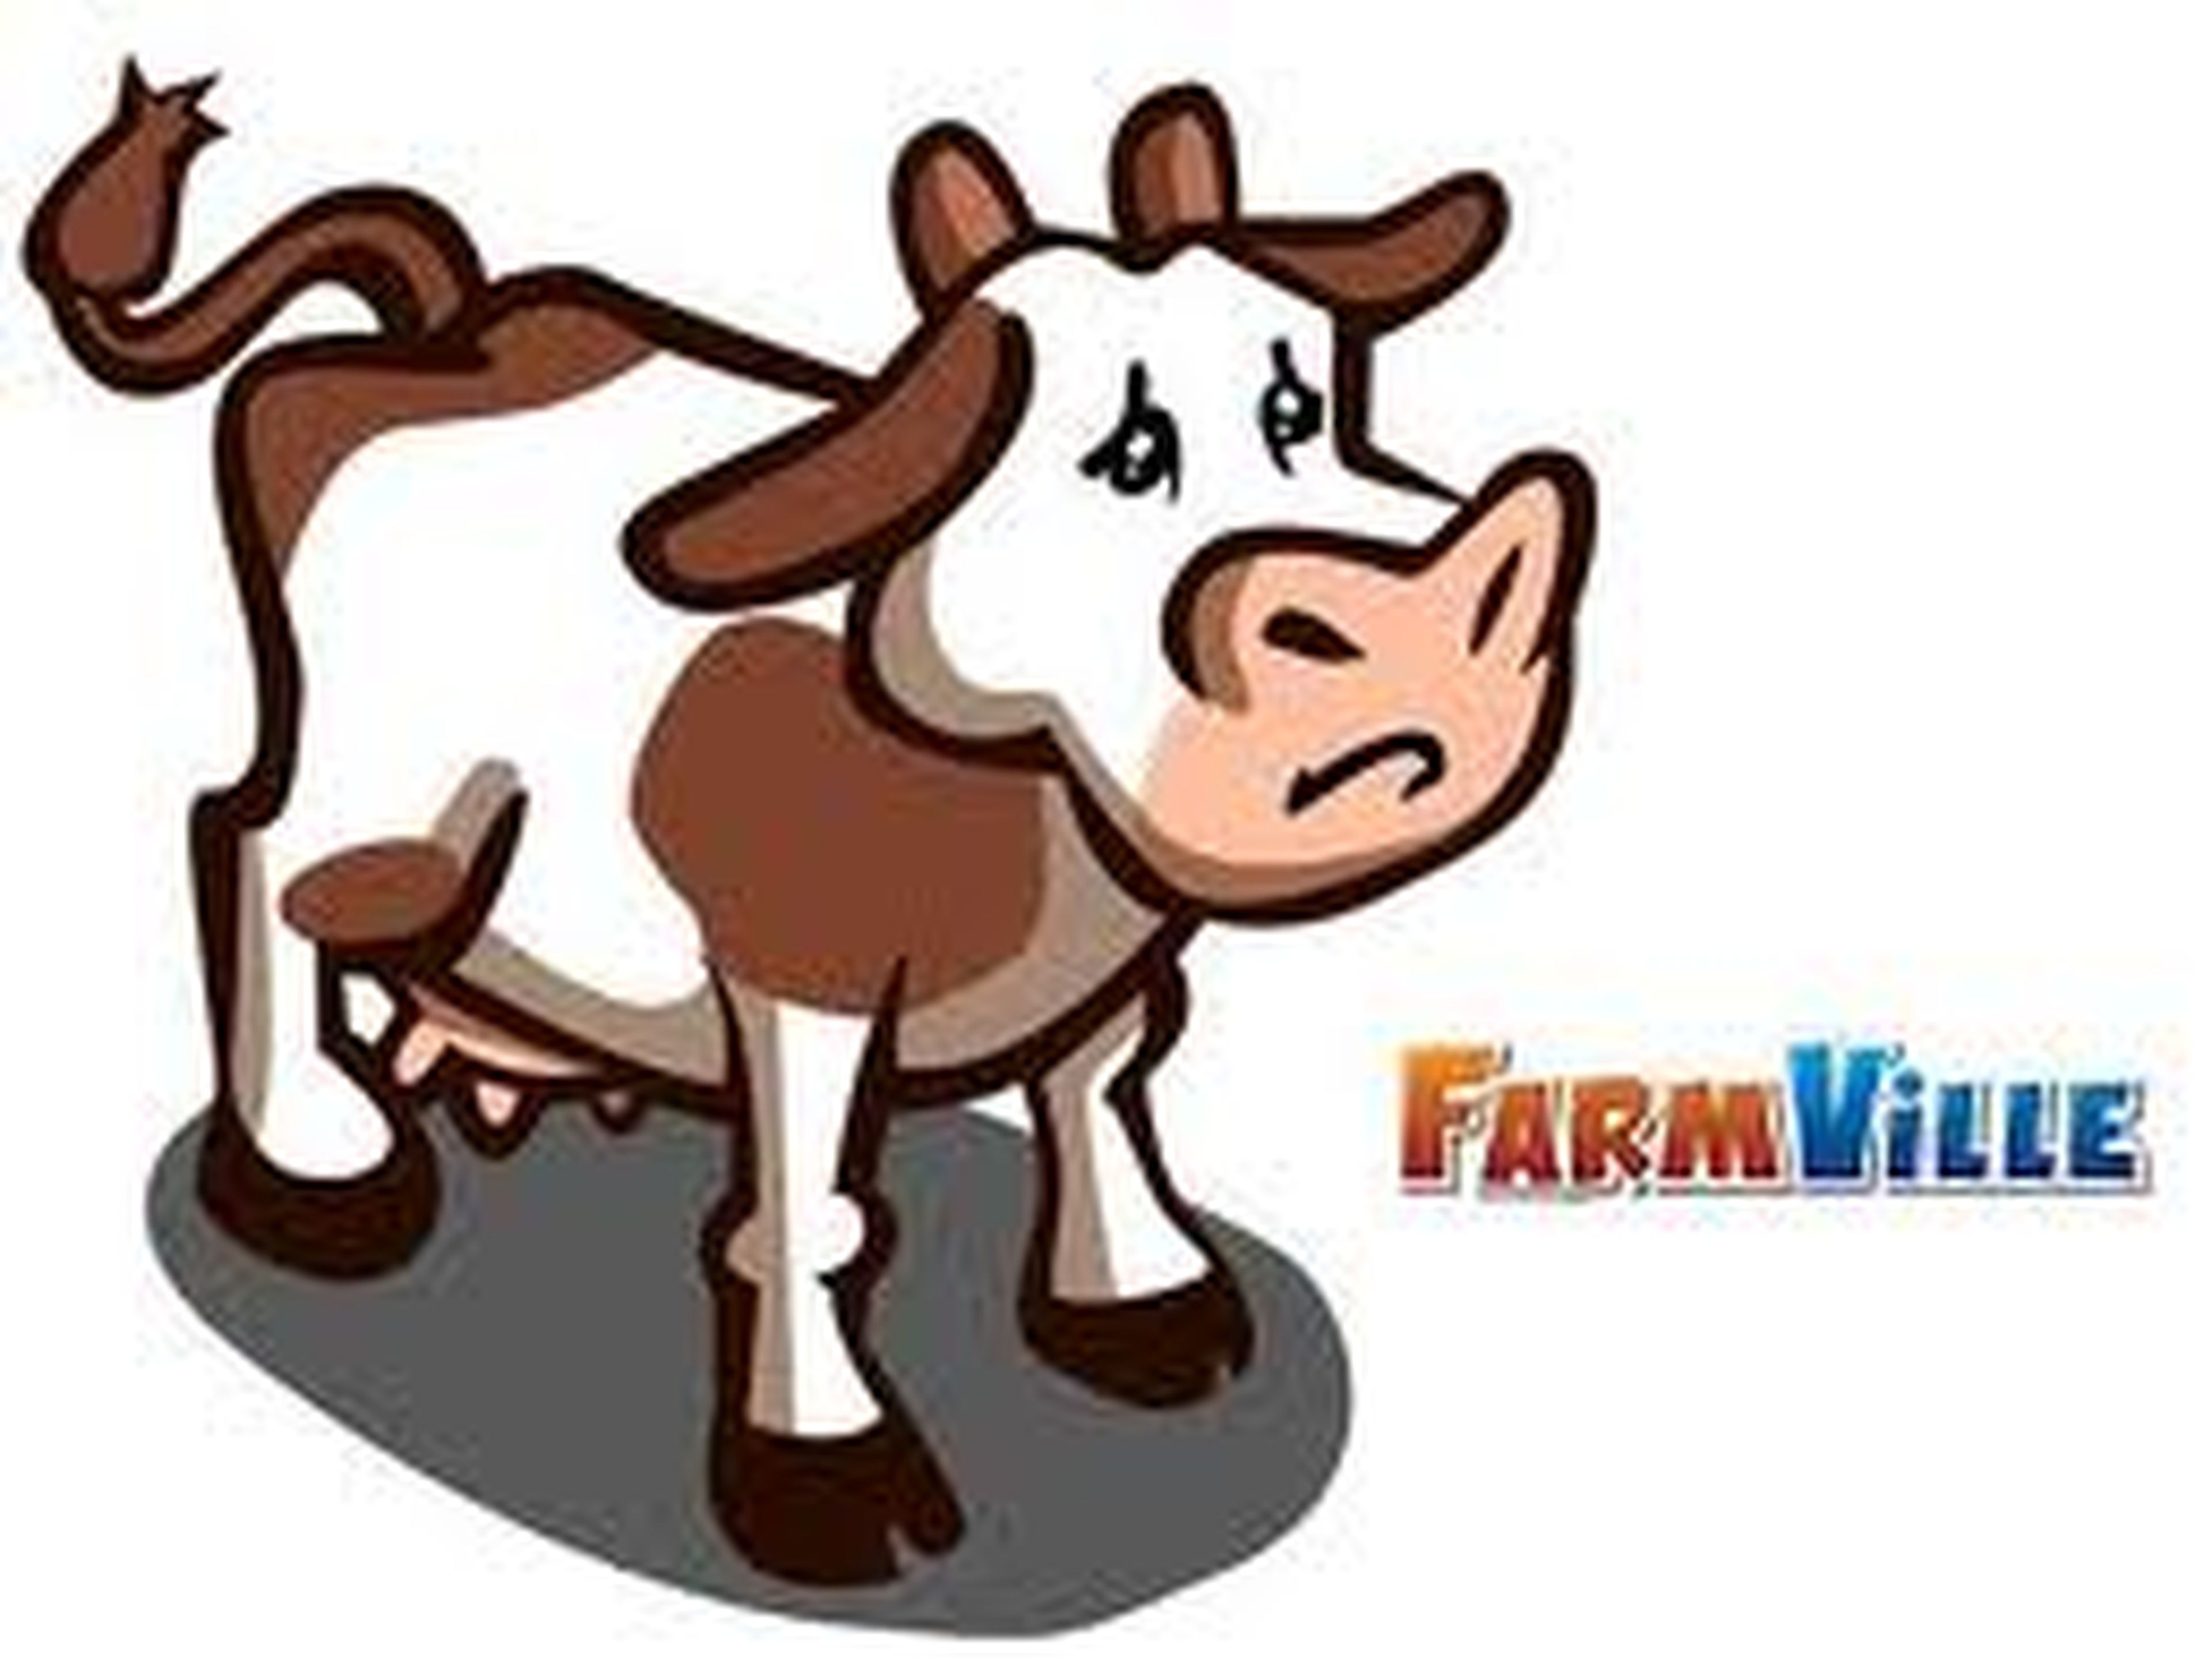 La vaca de FarmVille, en estado de coma